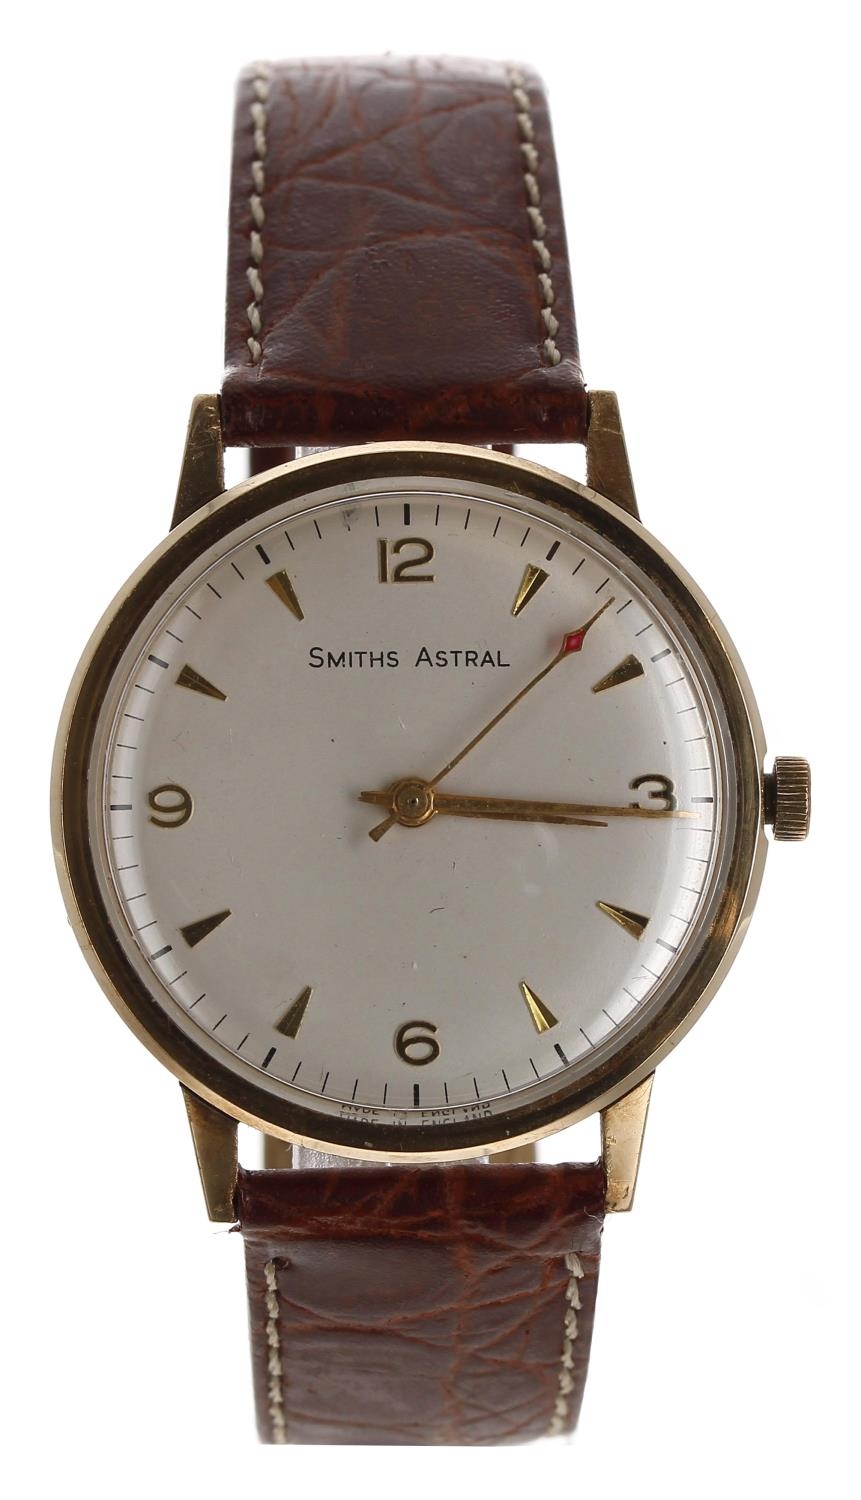 British Railways - Smiths Astral 9ct gentleman's wristwatch, London 1970, circular silvered dial